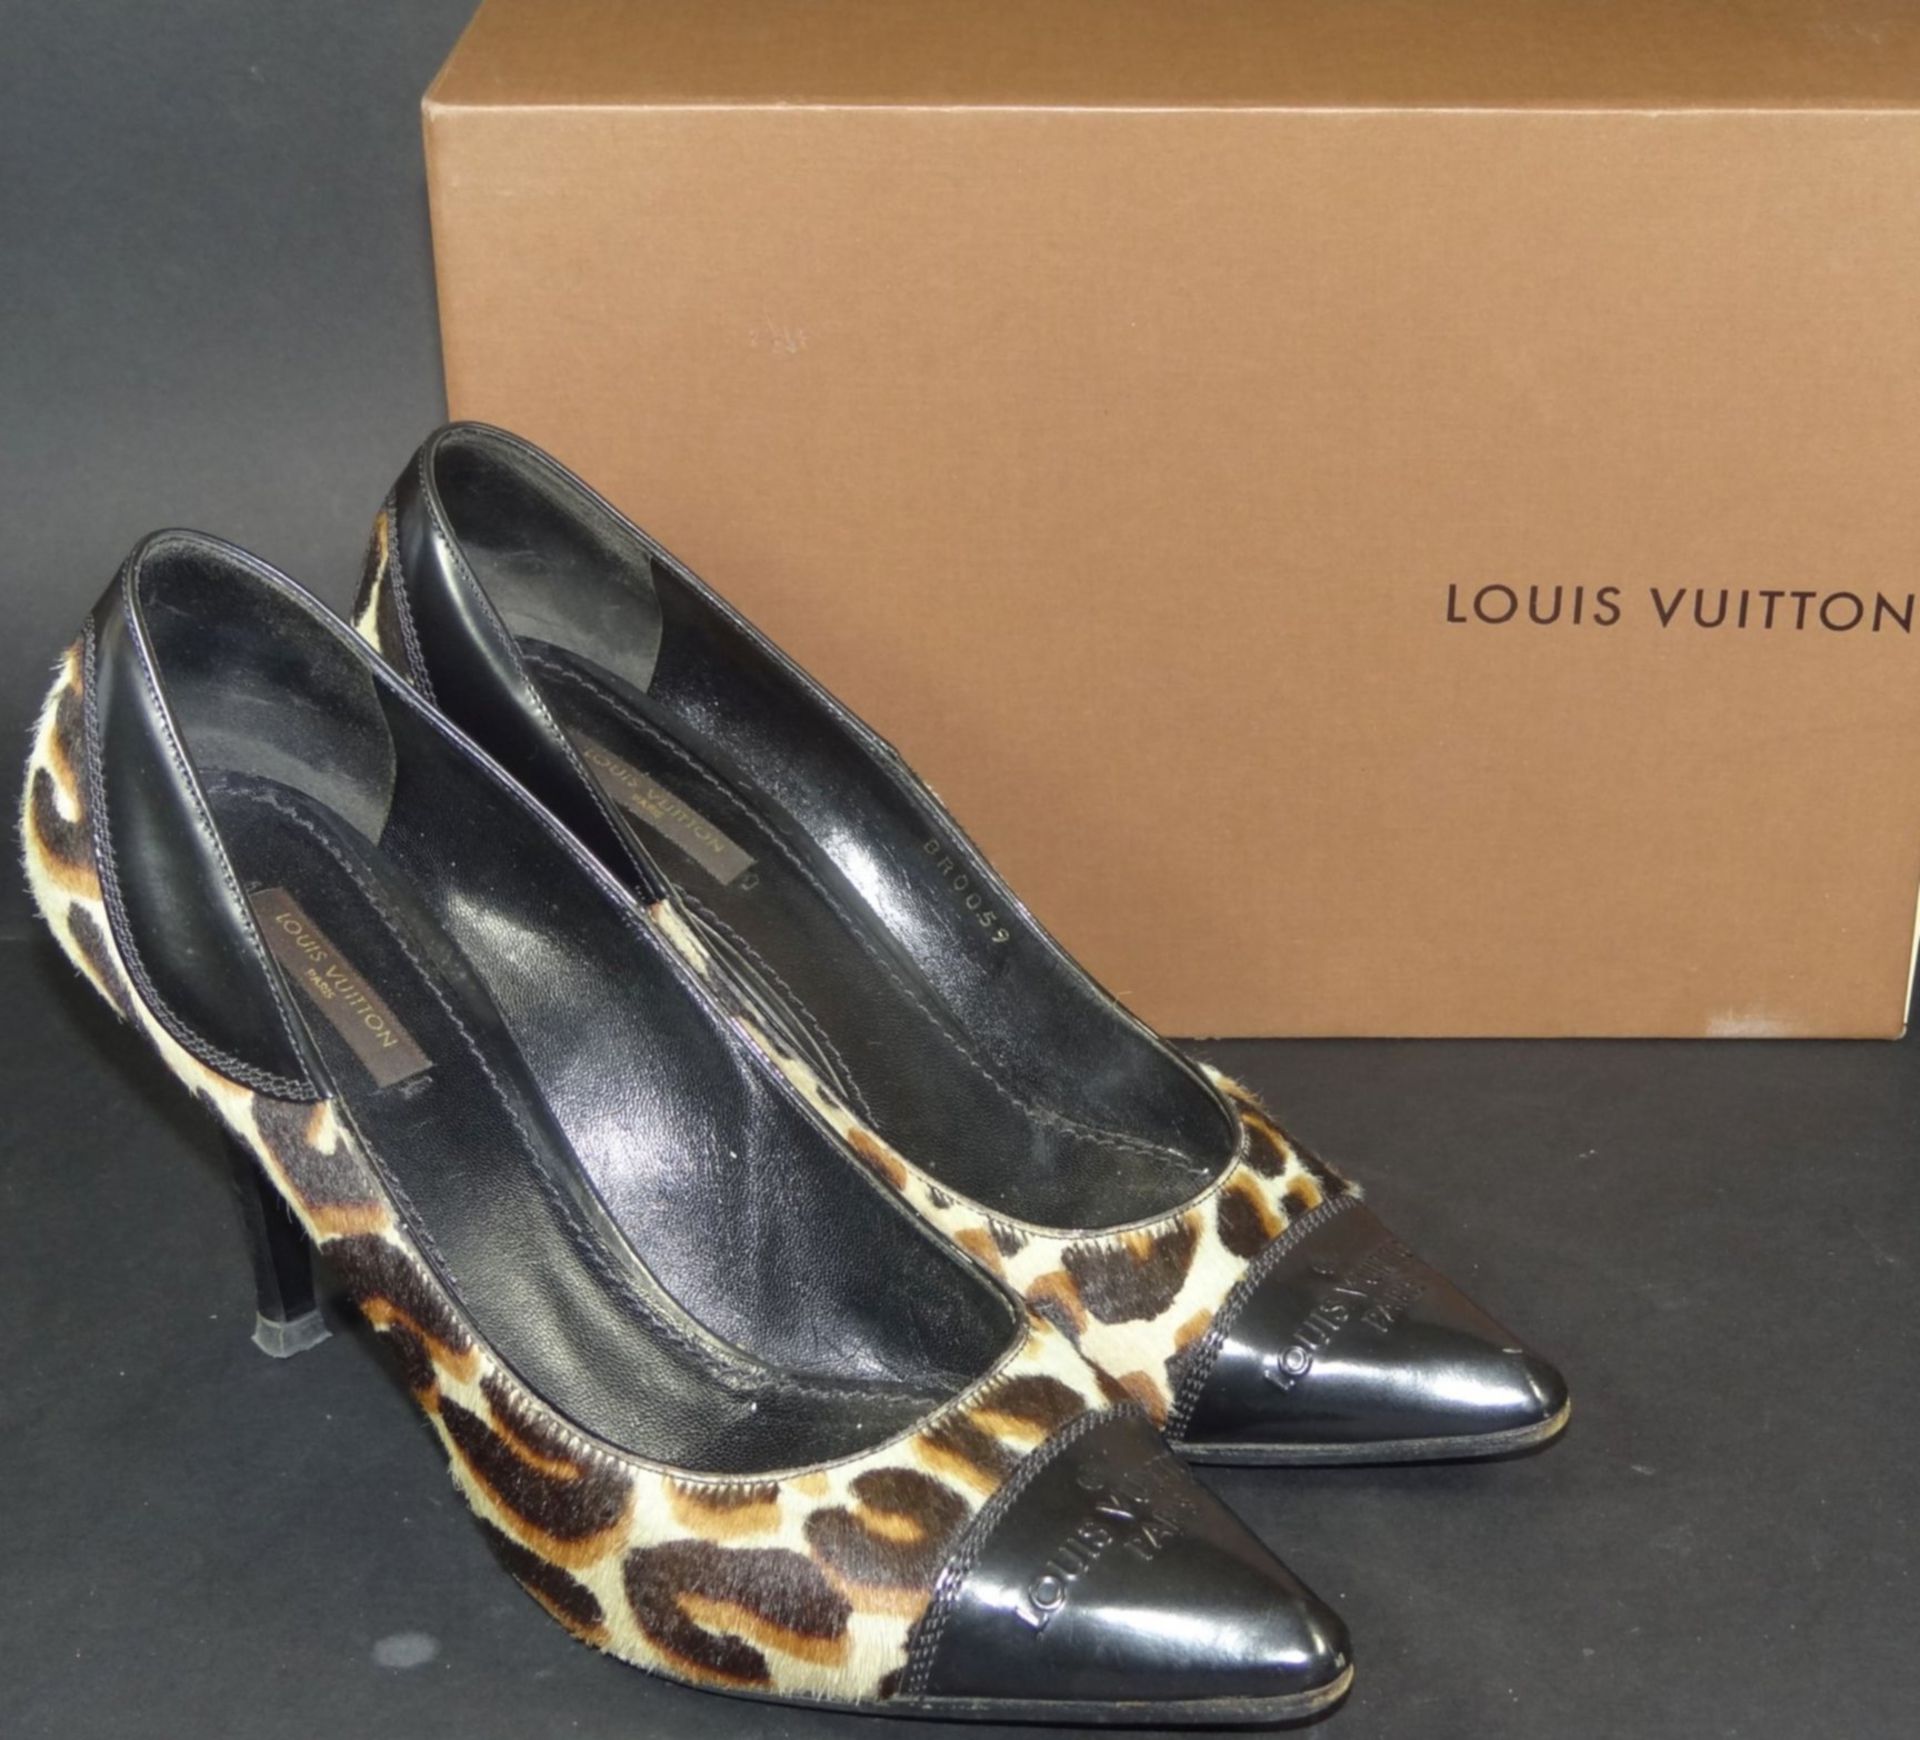 Paar Pumps "Louis Vuitton" in orig. Karton, 38 1/2, gut erhalten mit leichten Tragespuren, Kalb - Bild 2 aus 9